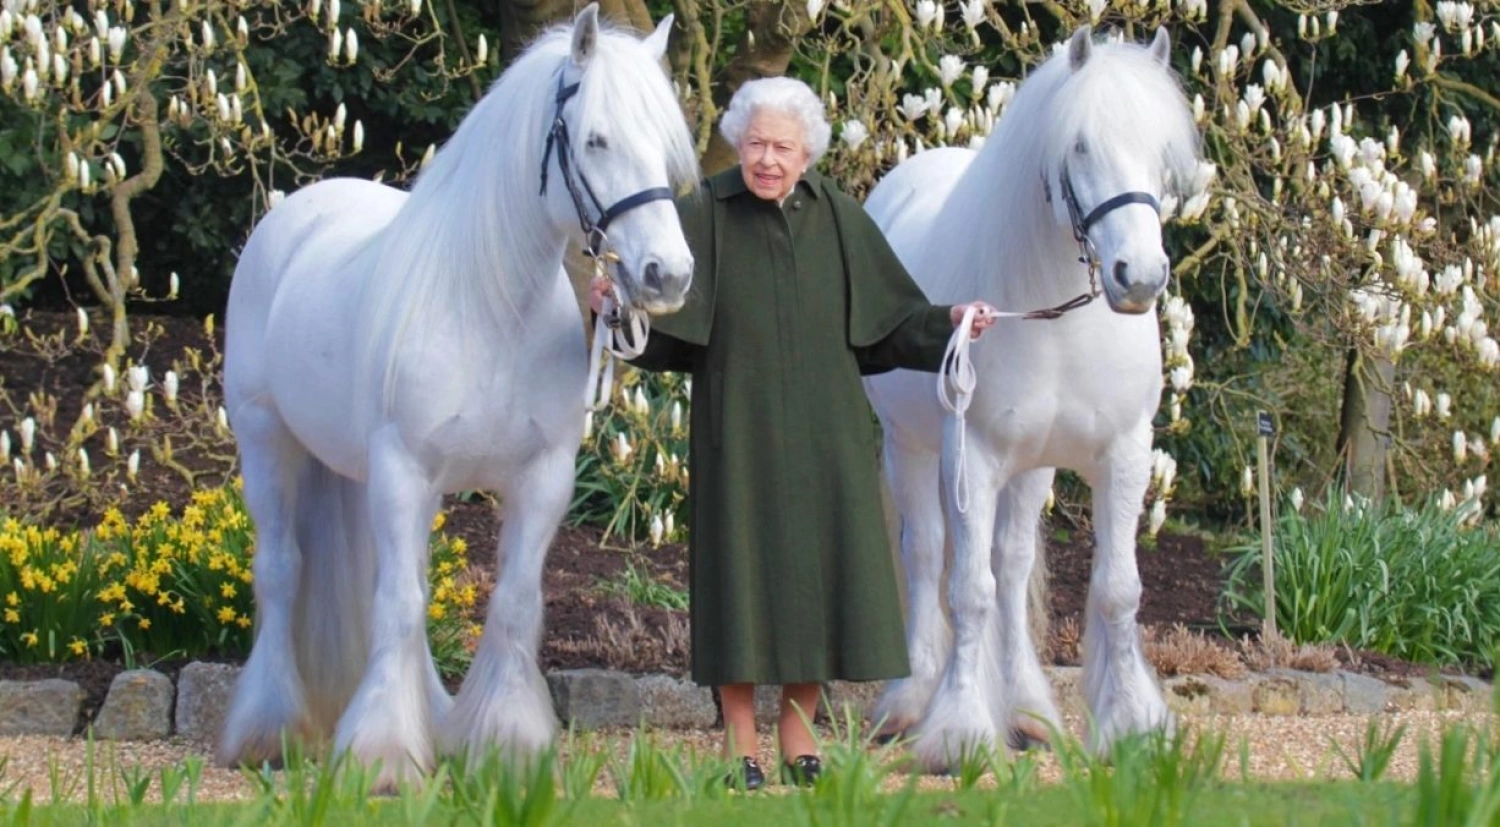 96 rokov, z toho 70 na tróne. Kráľovná Alžbeta II. oslavuje nevídané jubileum